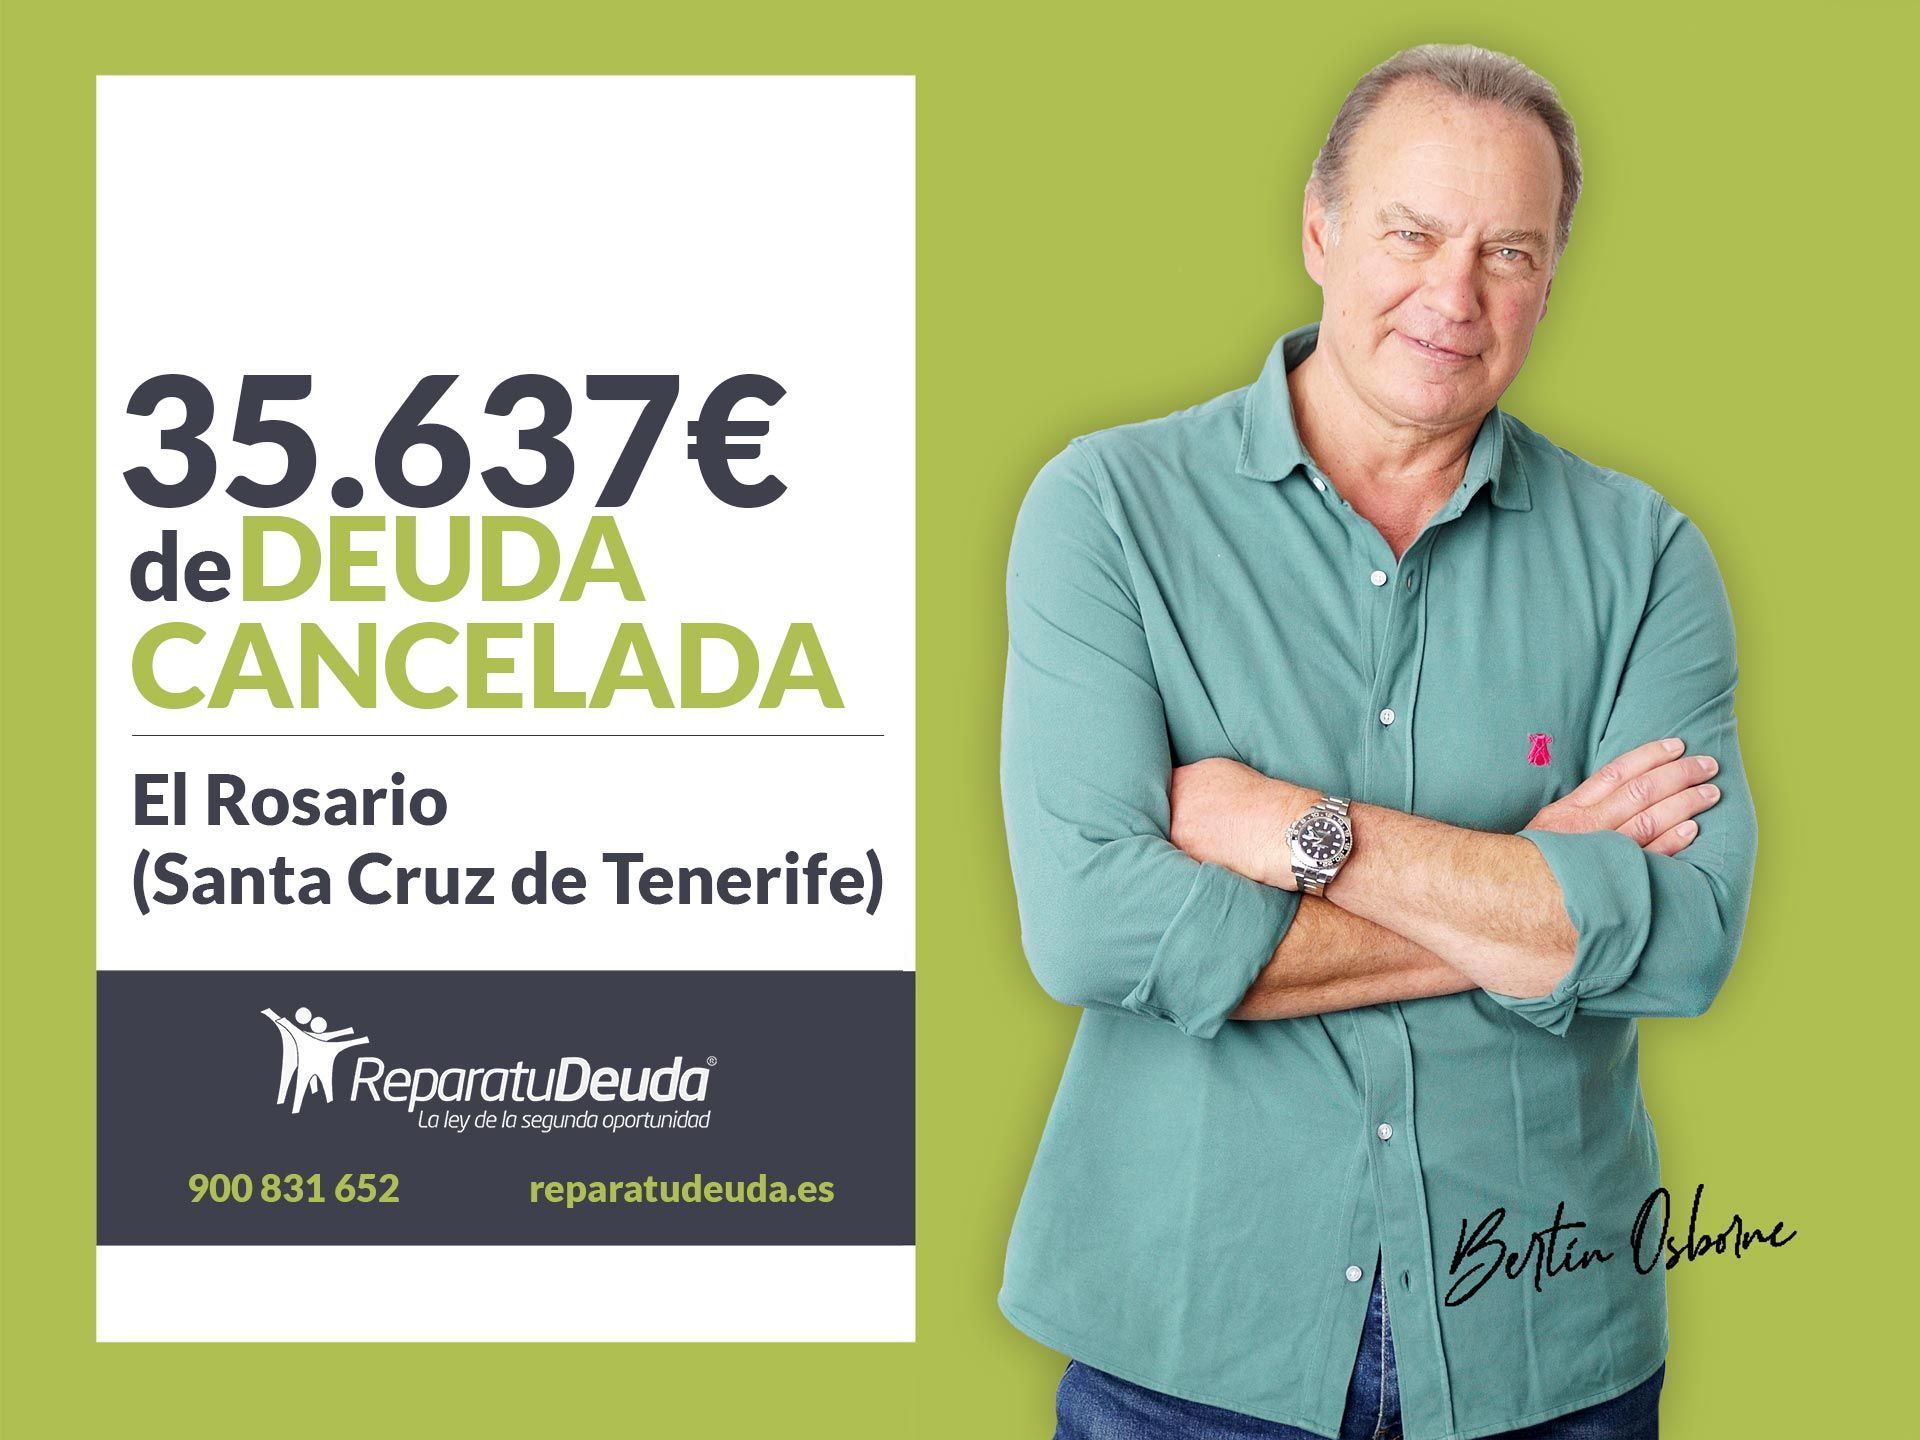 Repara tu Deuda Abogados cancela 35.637 ? en El Rosario (Santa Cruz de Tenerife) con la Ley de Segunda Oportunidad